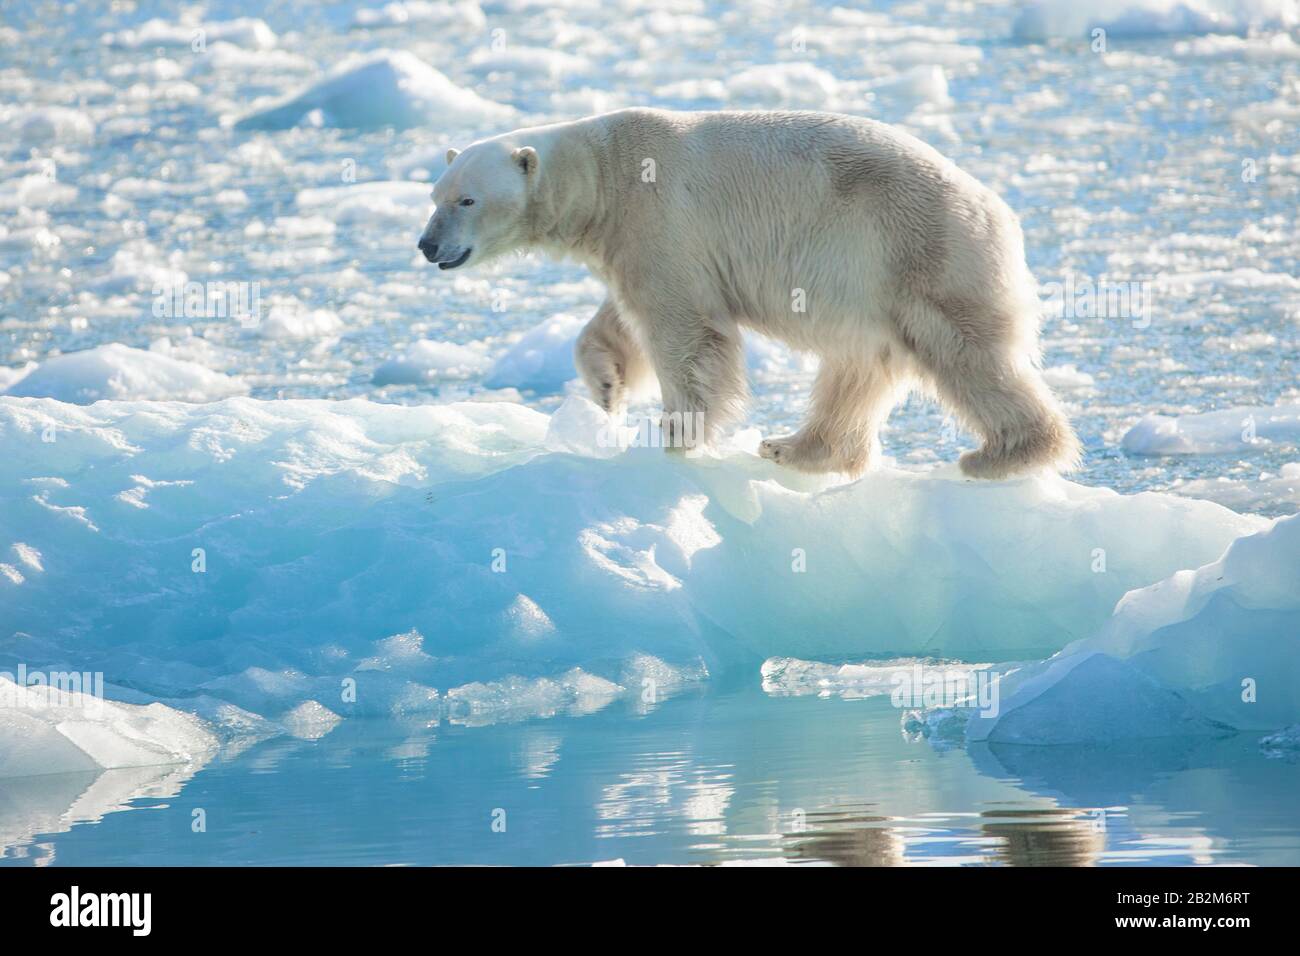 Grande orso polare sul ghiaccio galleggiante nell'artico. Svalbard, Norvegia Foto Stock